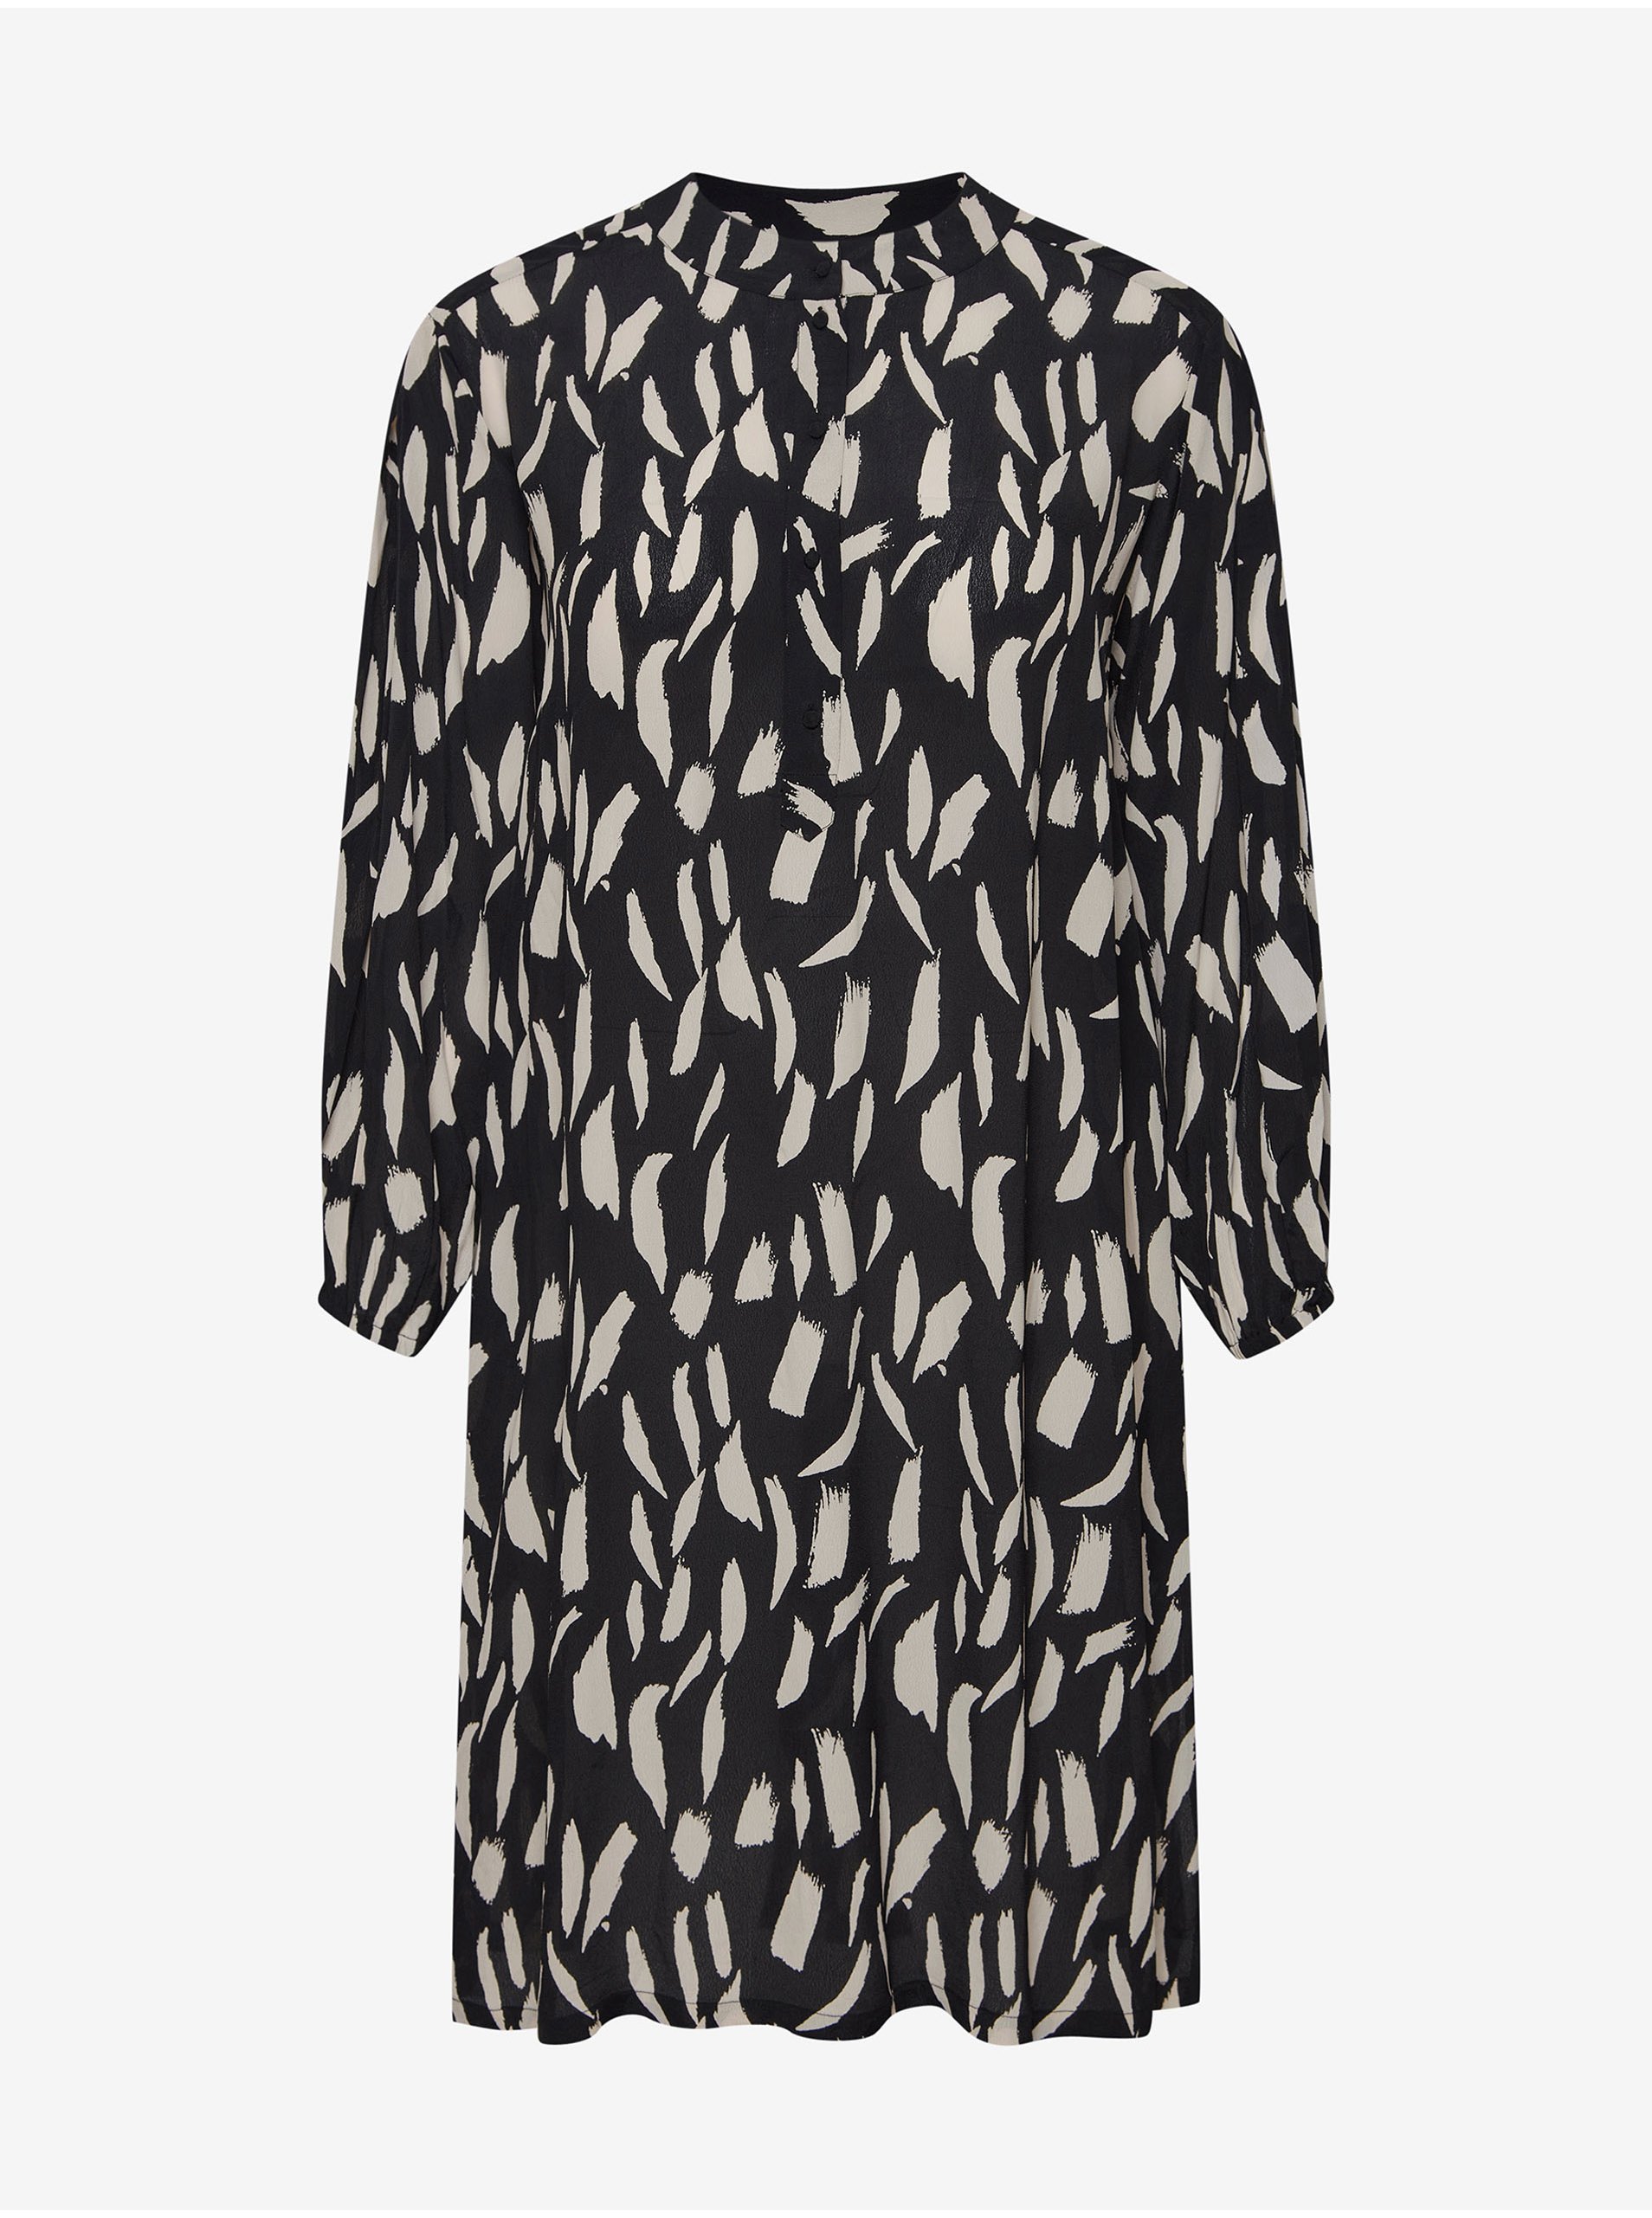 Levně Fransa Krémovo-černé vzorované košilové šaty s tříčtvrtečním rukávem Fra - Dámské